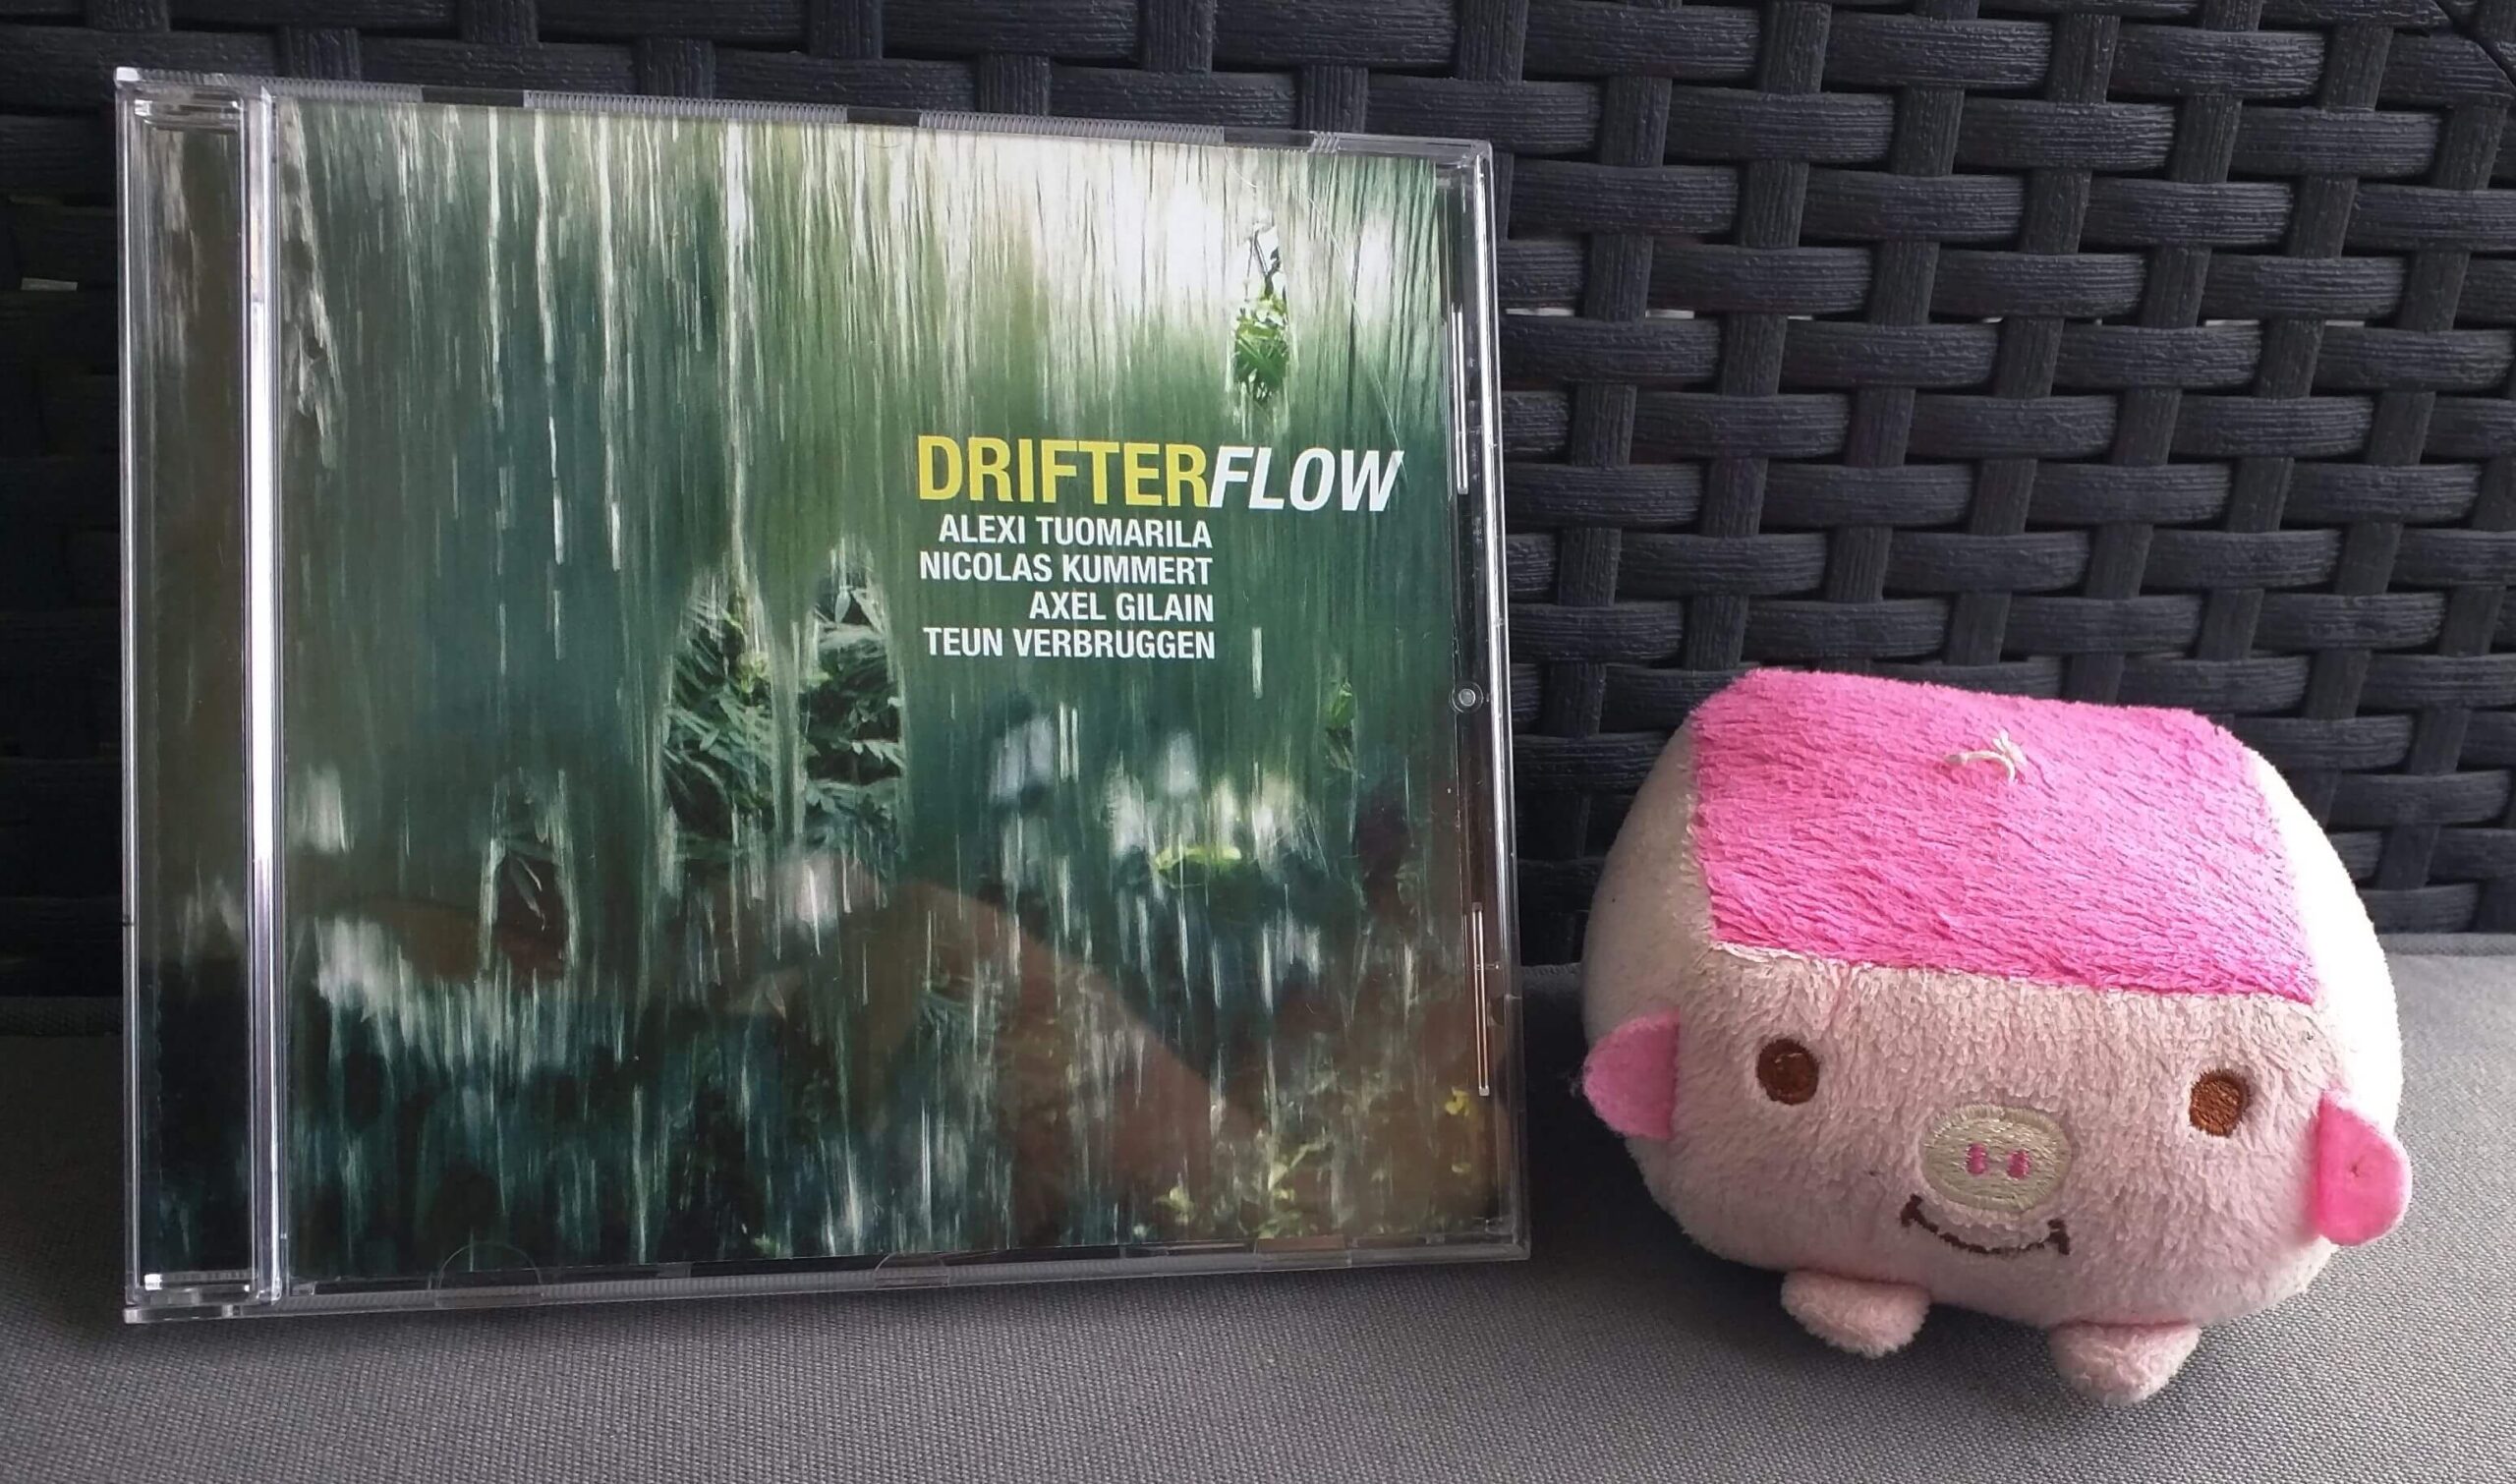 Drifter – Flow